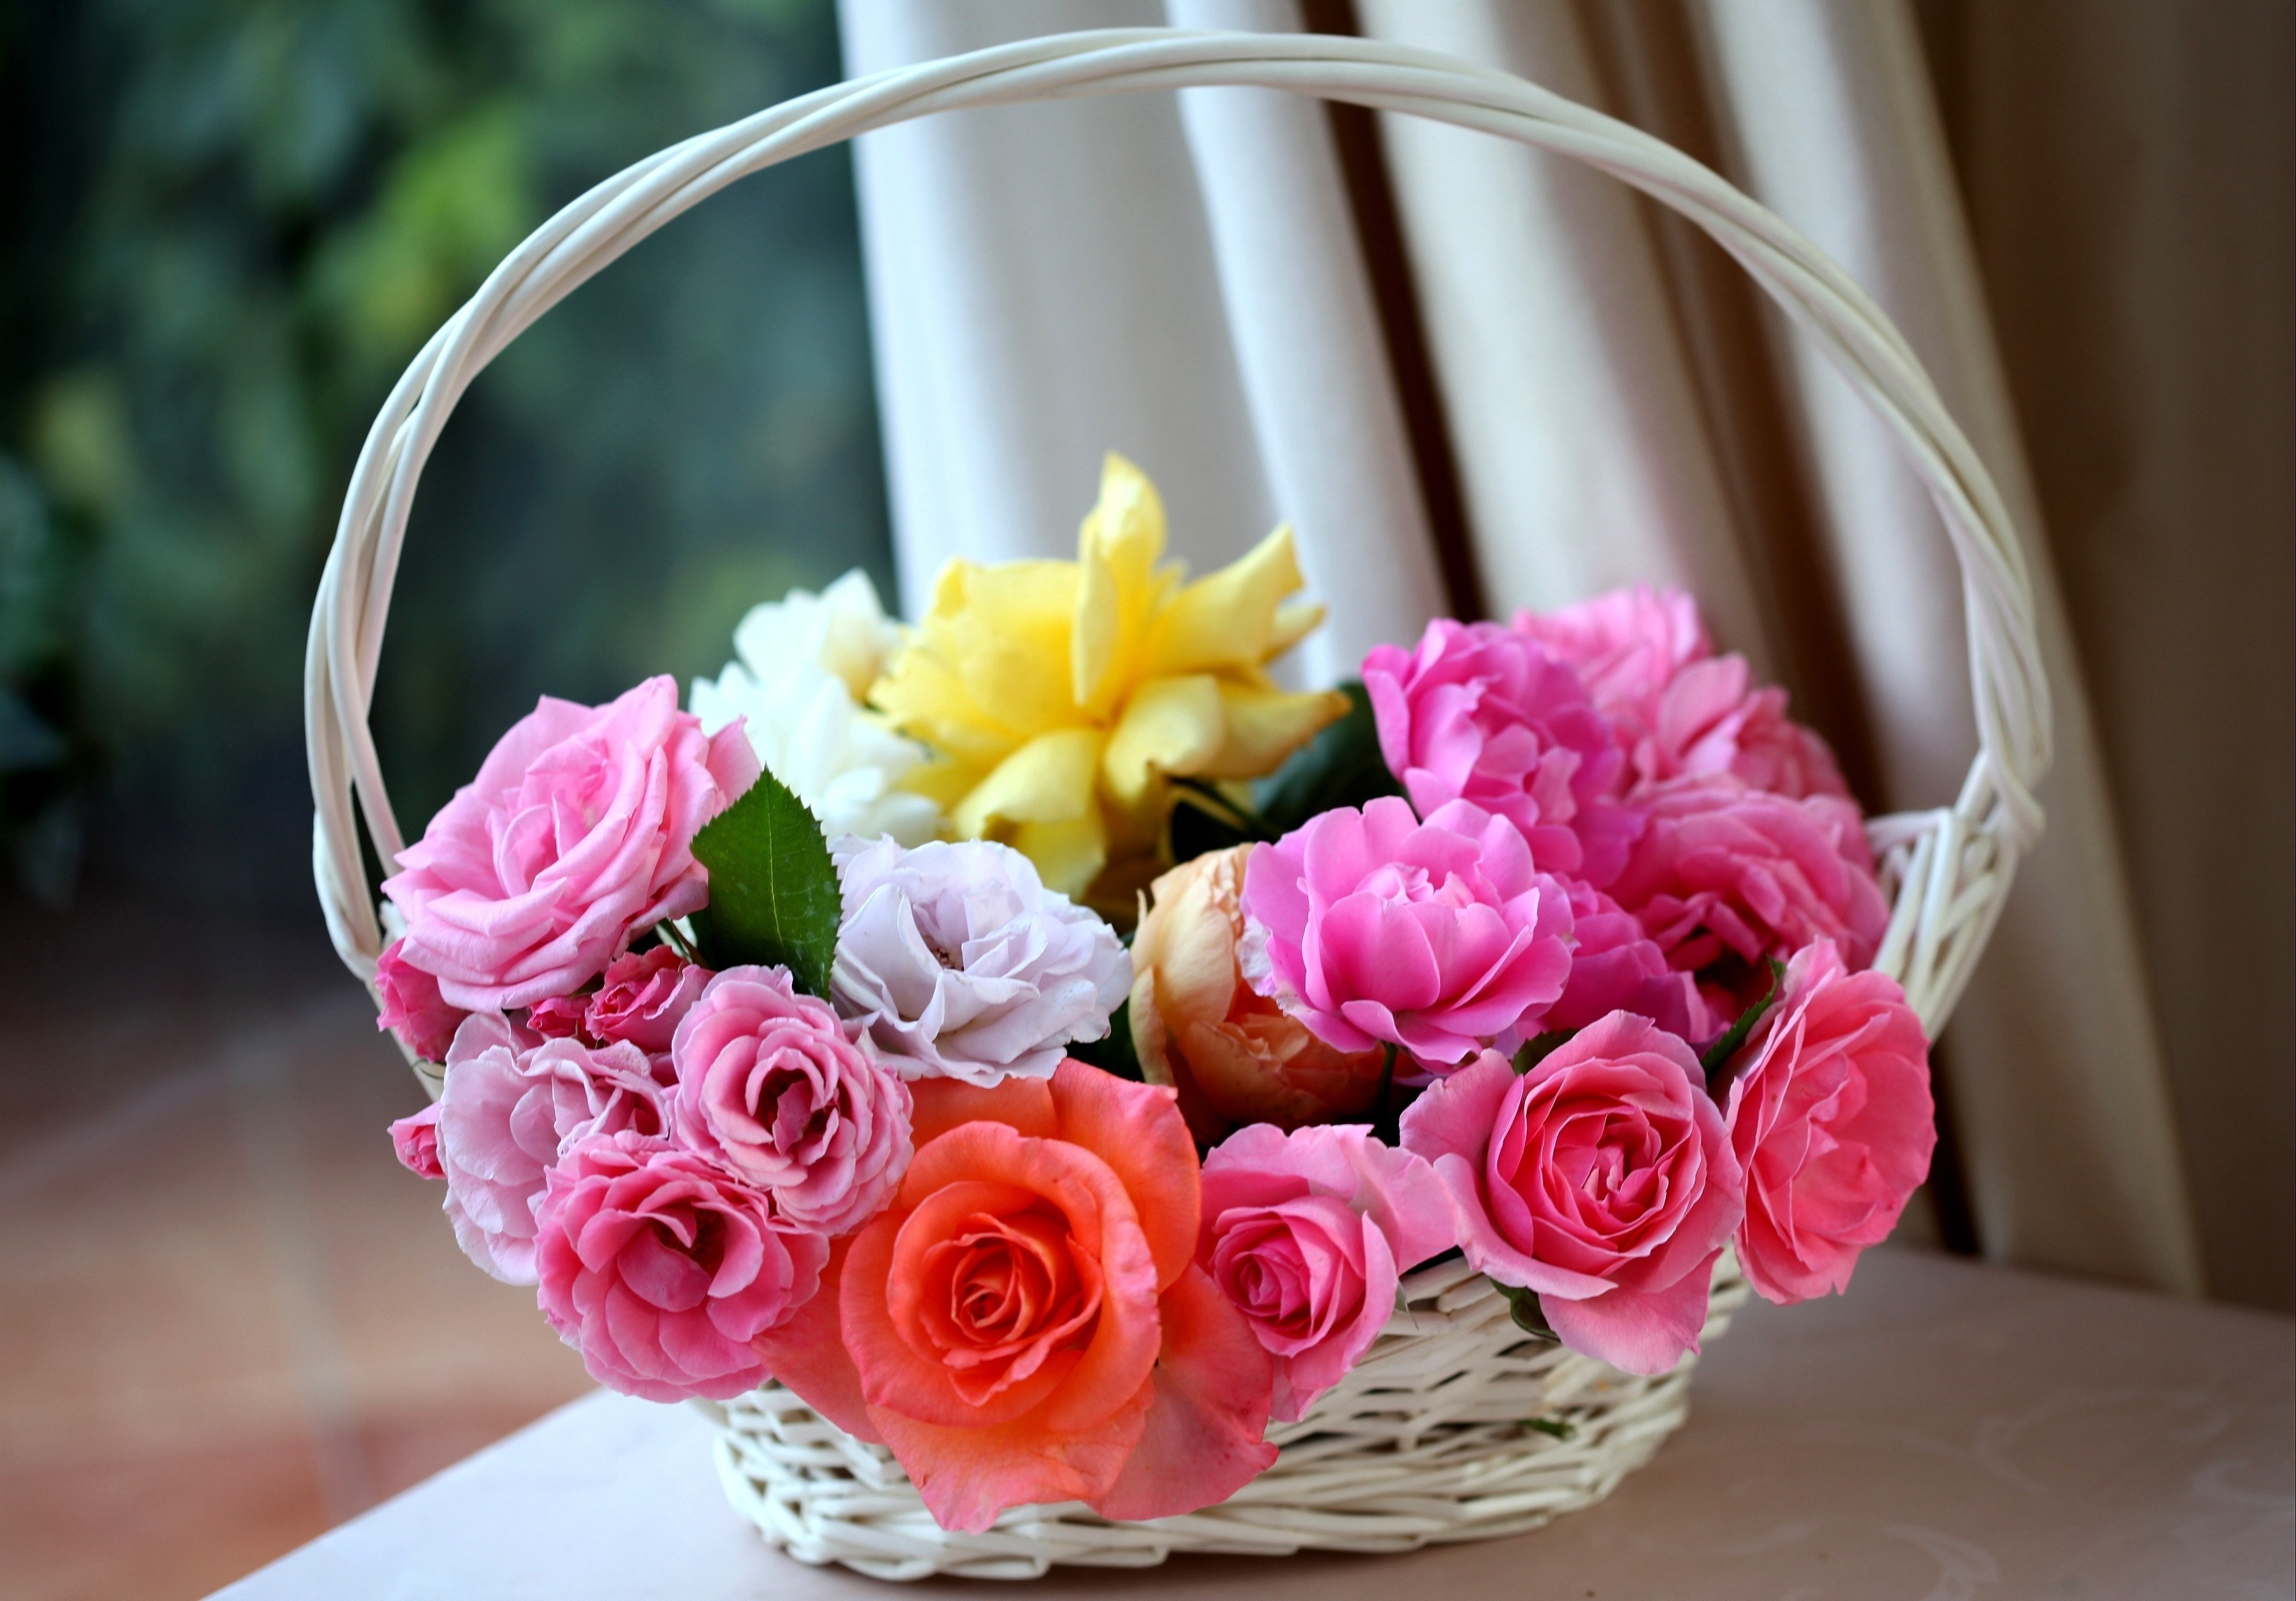 basket, roses, flowers, buds, charm, lukoshko Phone Background